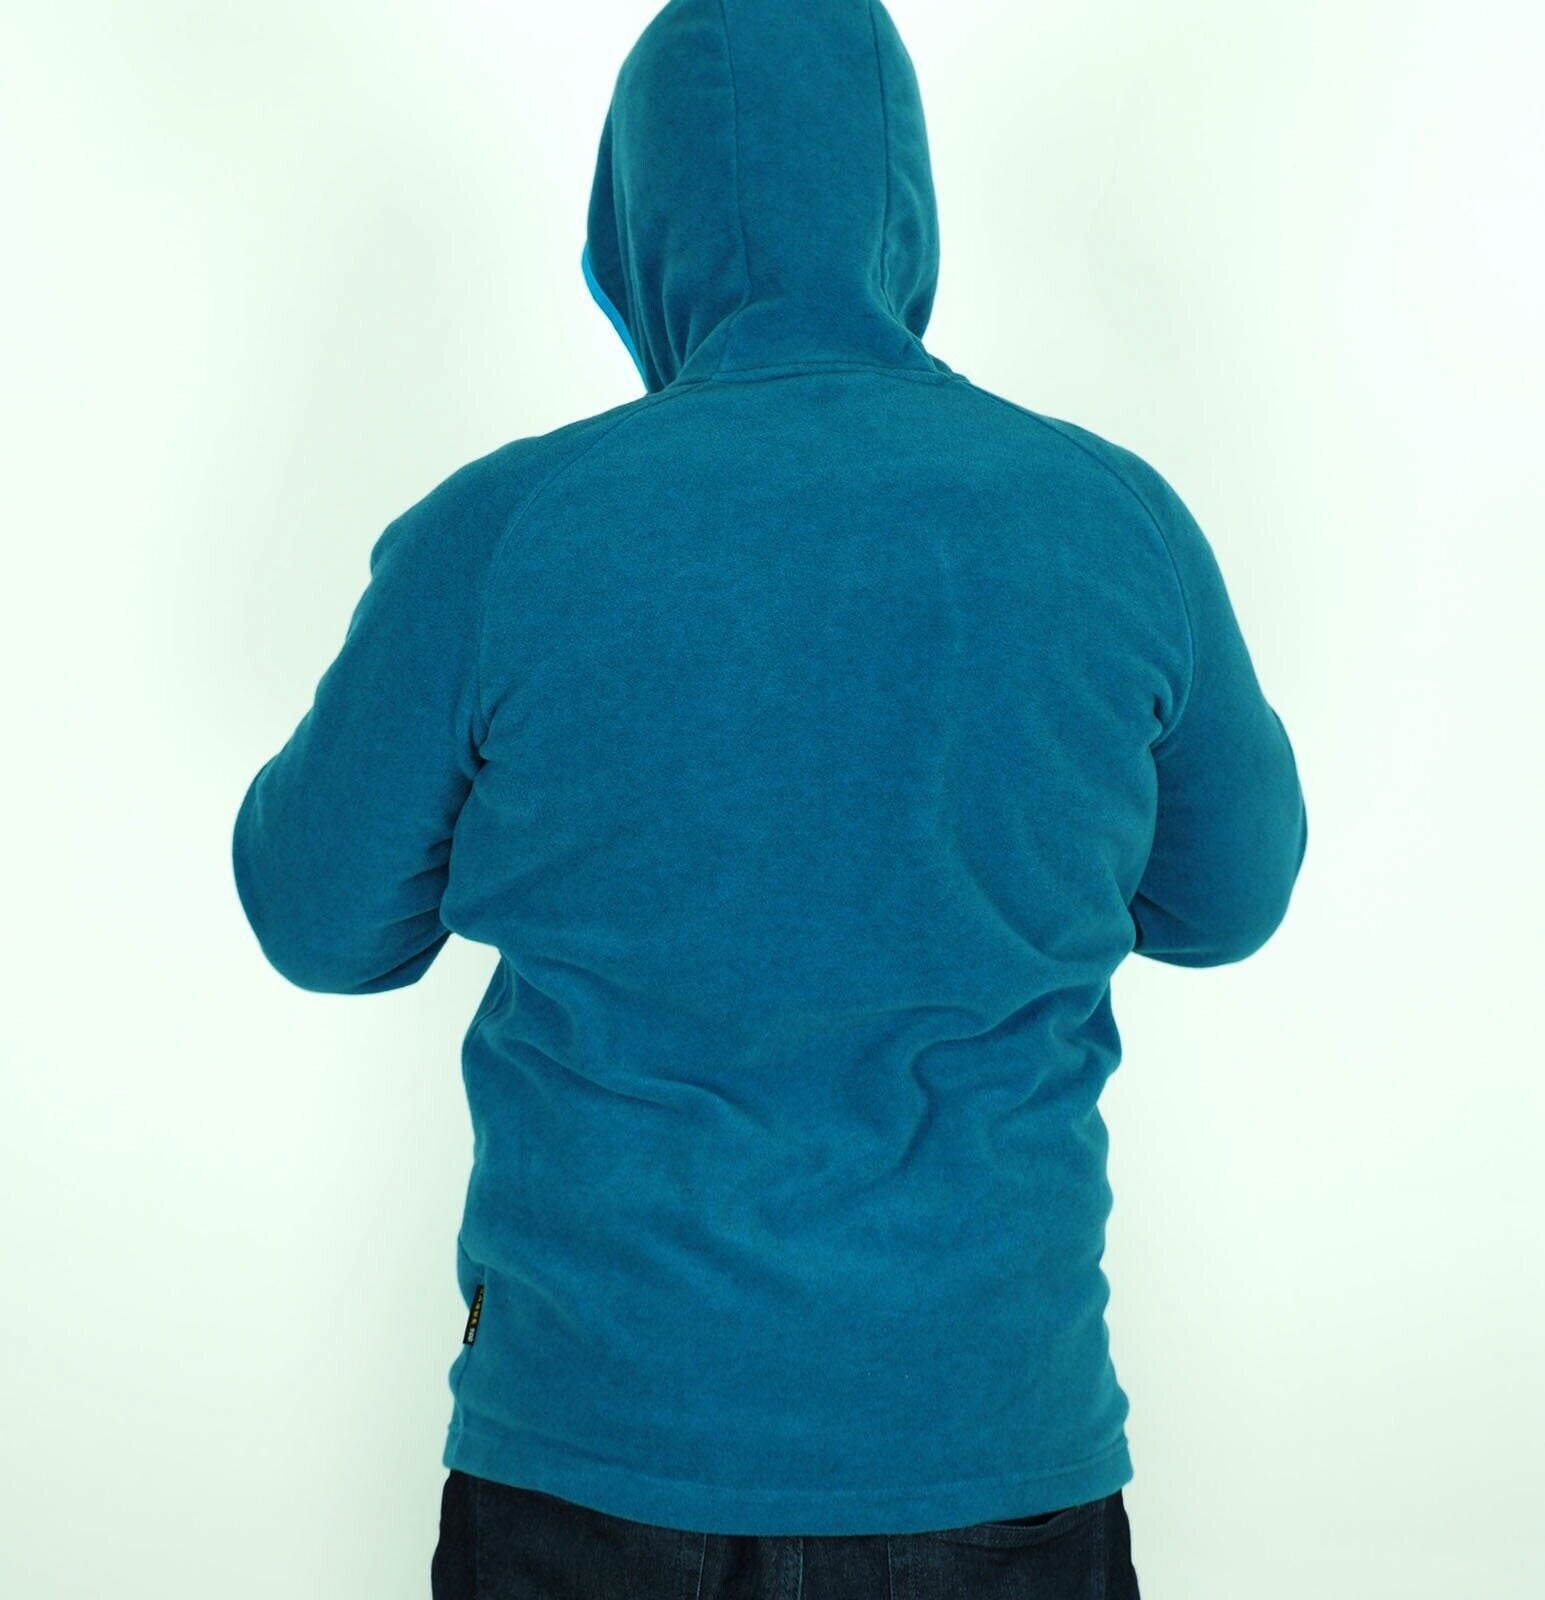 Mens Jack Wolfskin Ledro 5007711 Moroccan Blue Warm Zip Up Fleece Sweatshirt - London Top Style